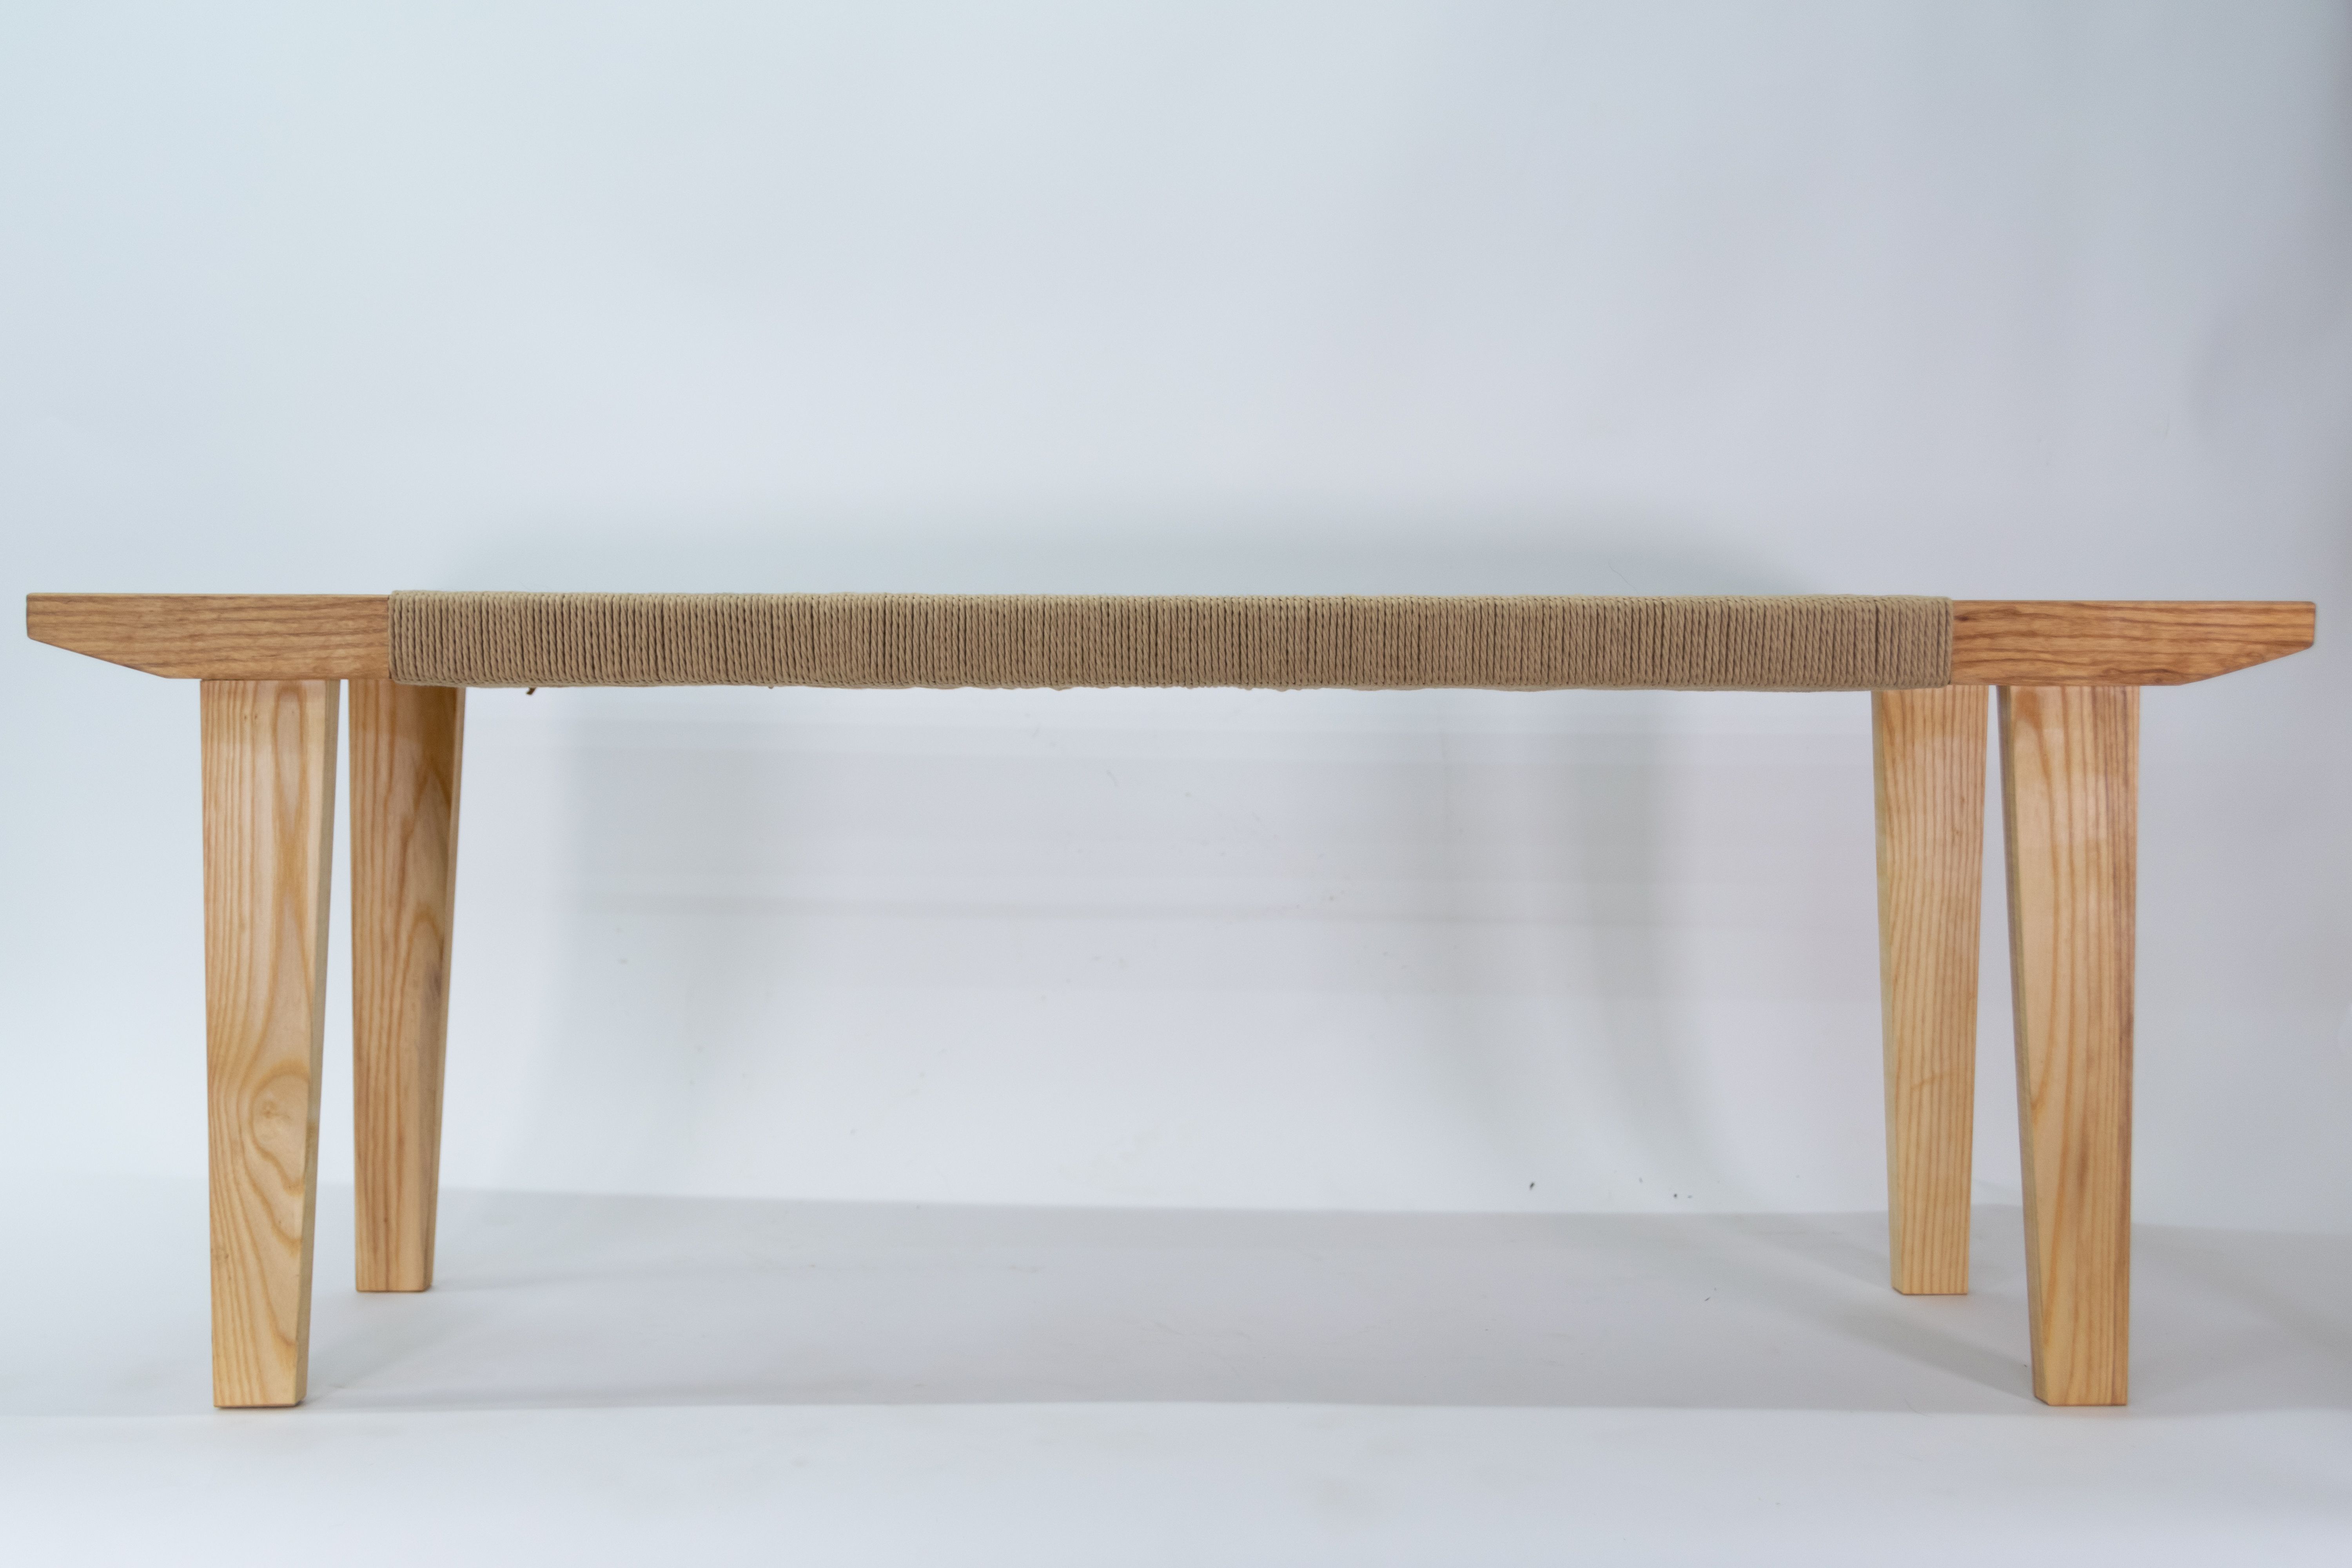 Handmade Danish Cord Bench by Stelzer Studio